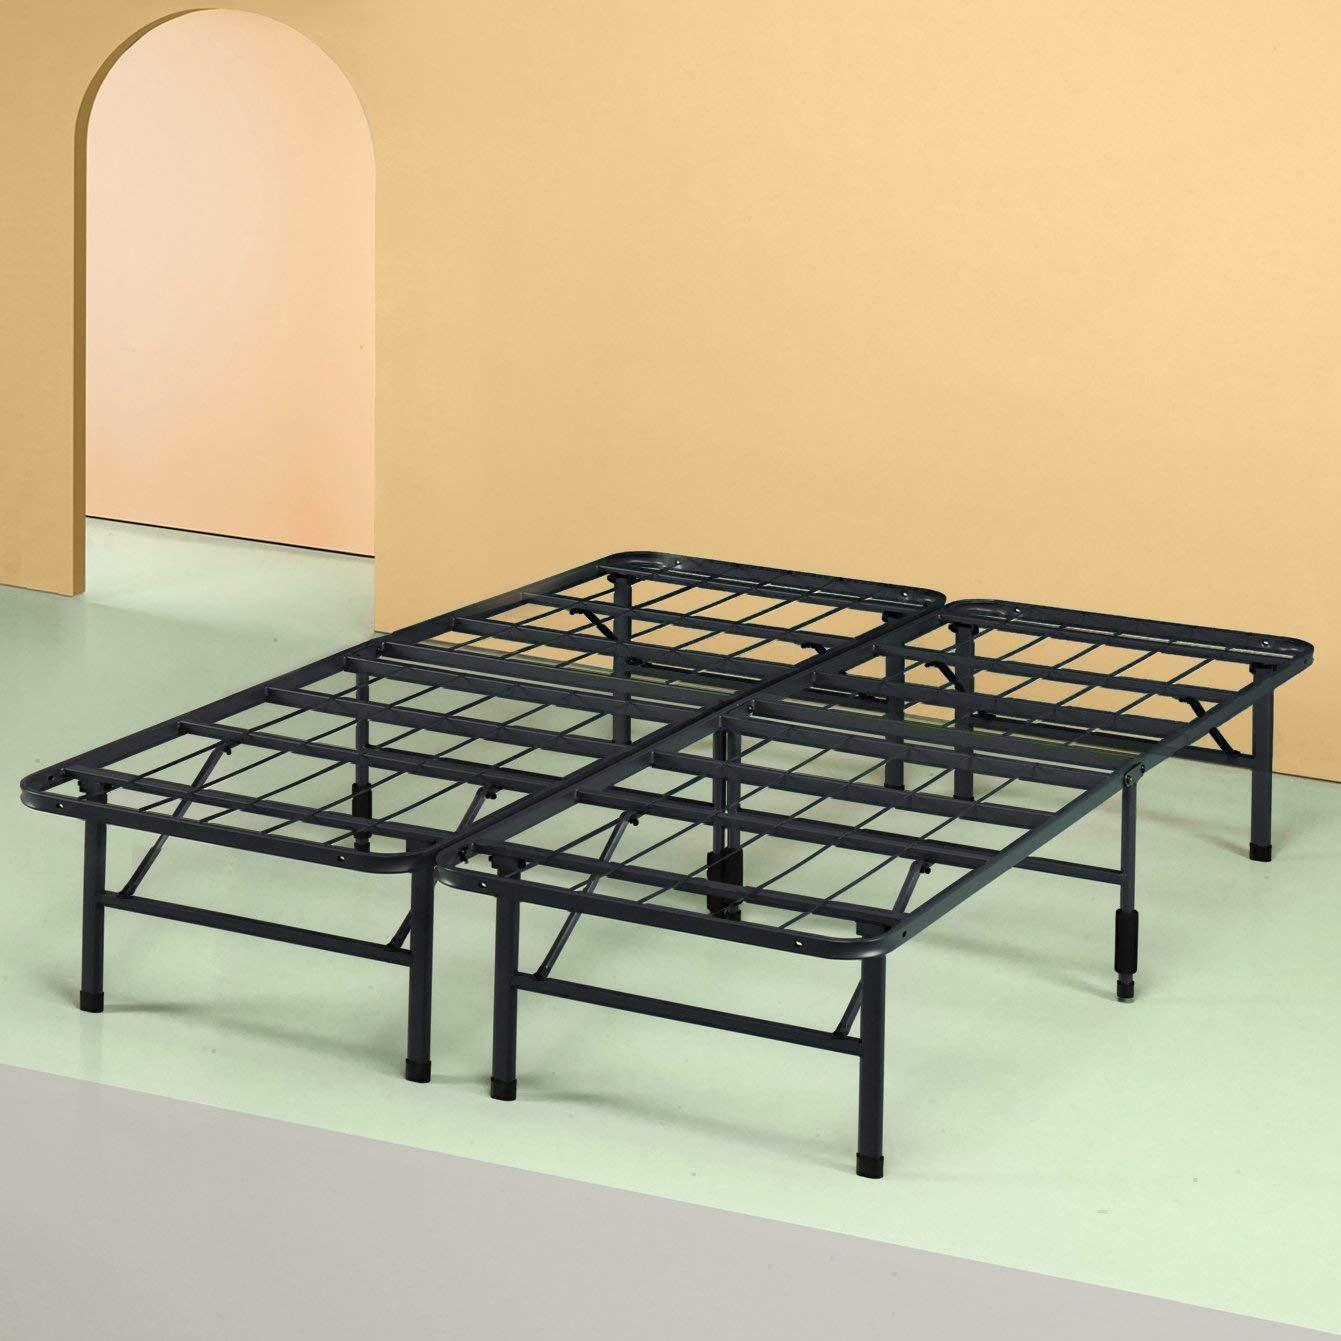 19 Best Metal Bed Frames 2020 The, Structures Adjustable Metal Bed Frame